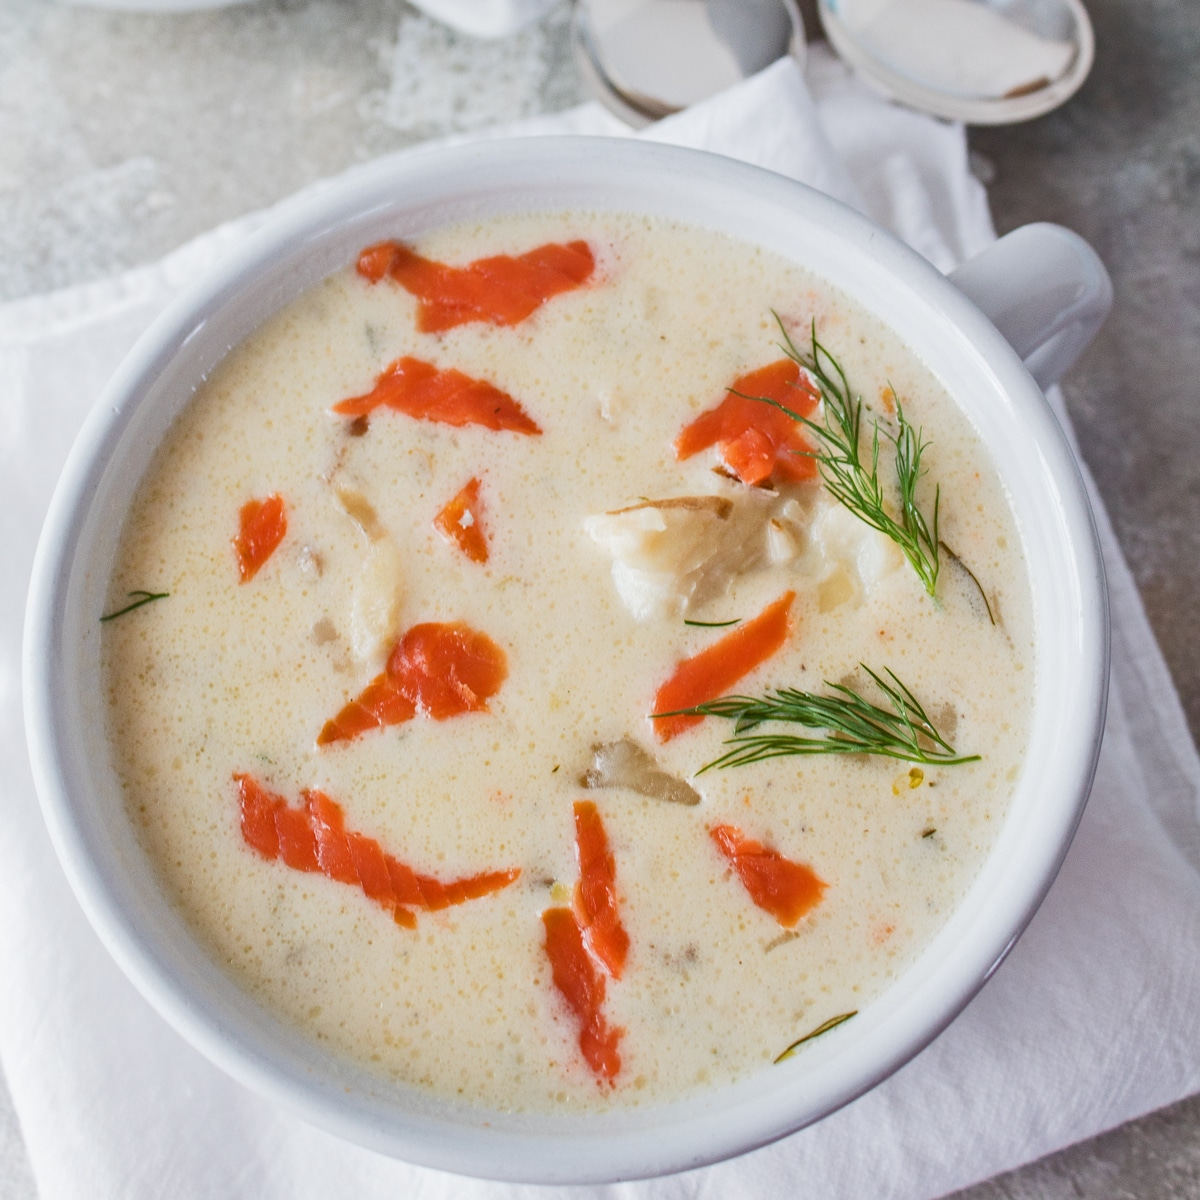 مربعة الشكل من حساء المأكولات البحرية مع سمك السلمون المدخن في وعاء أبيض.